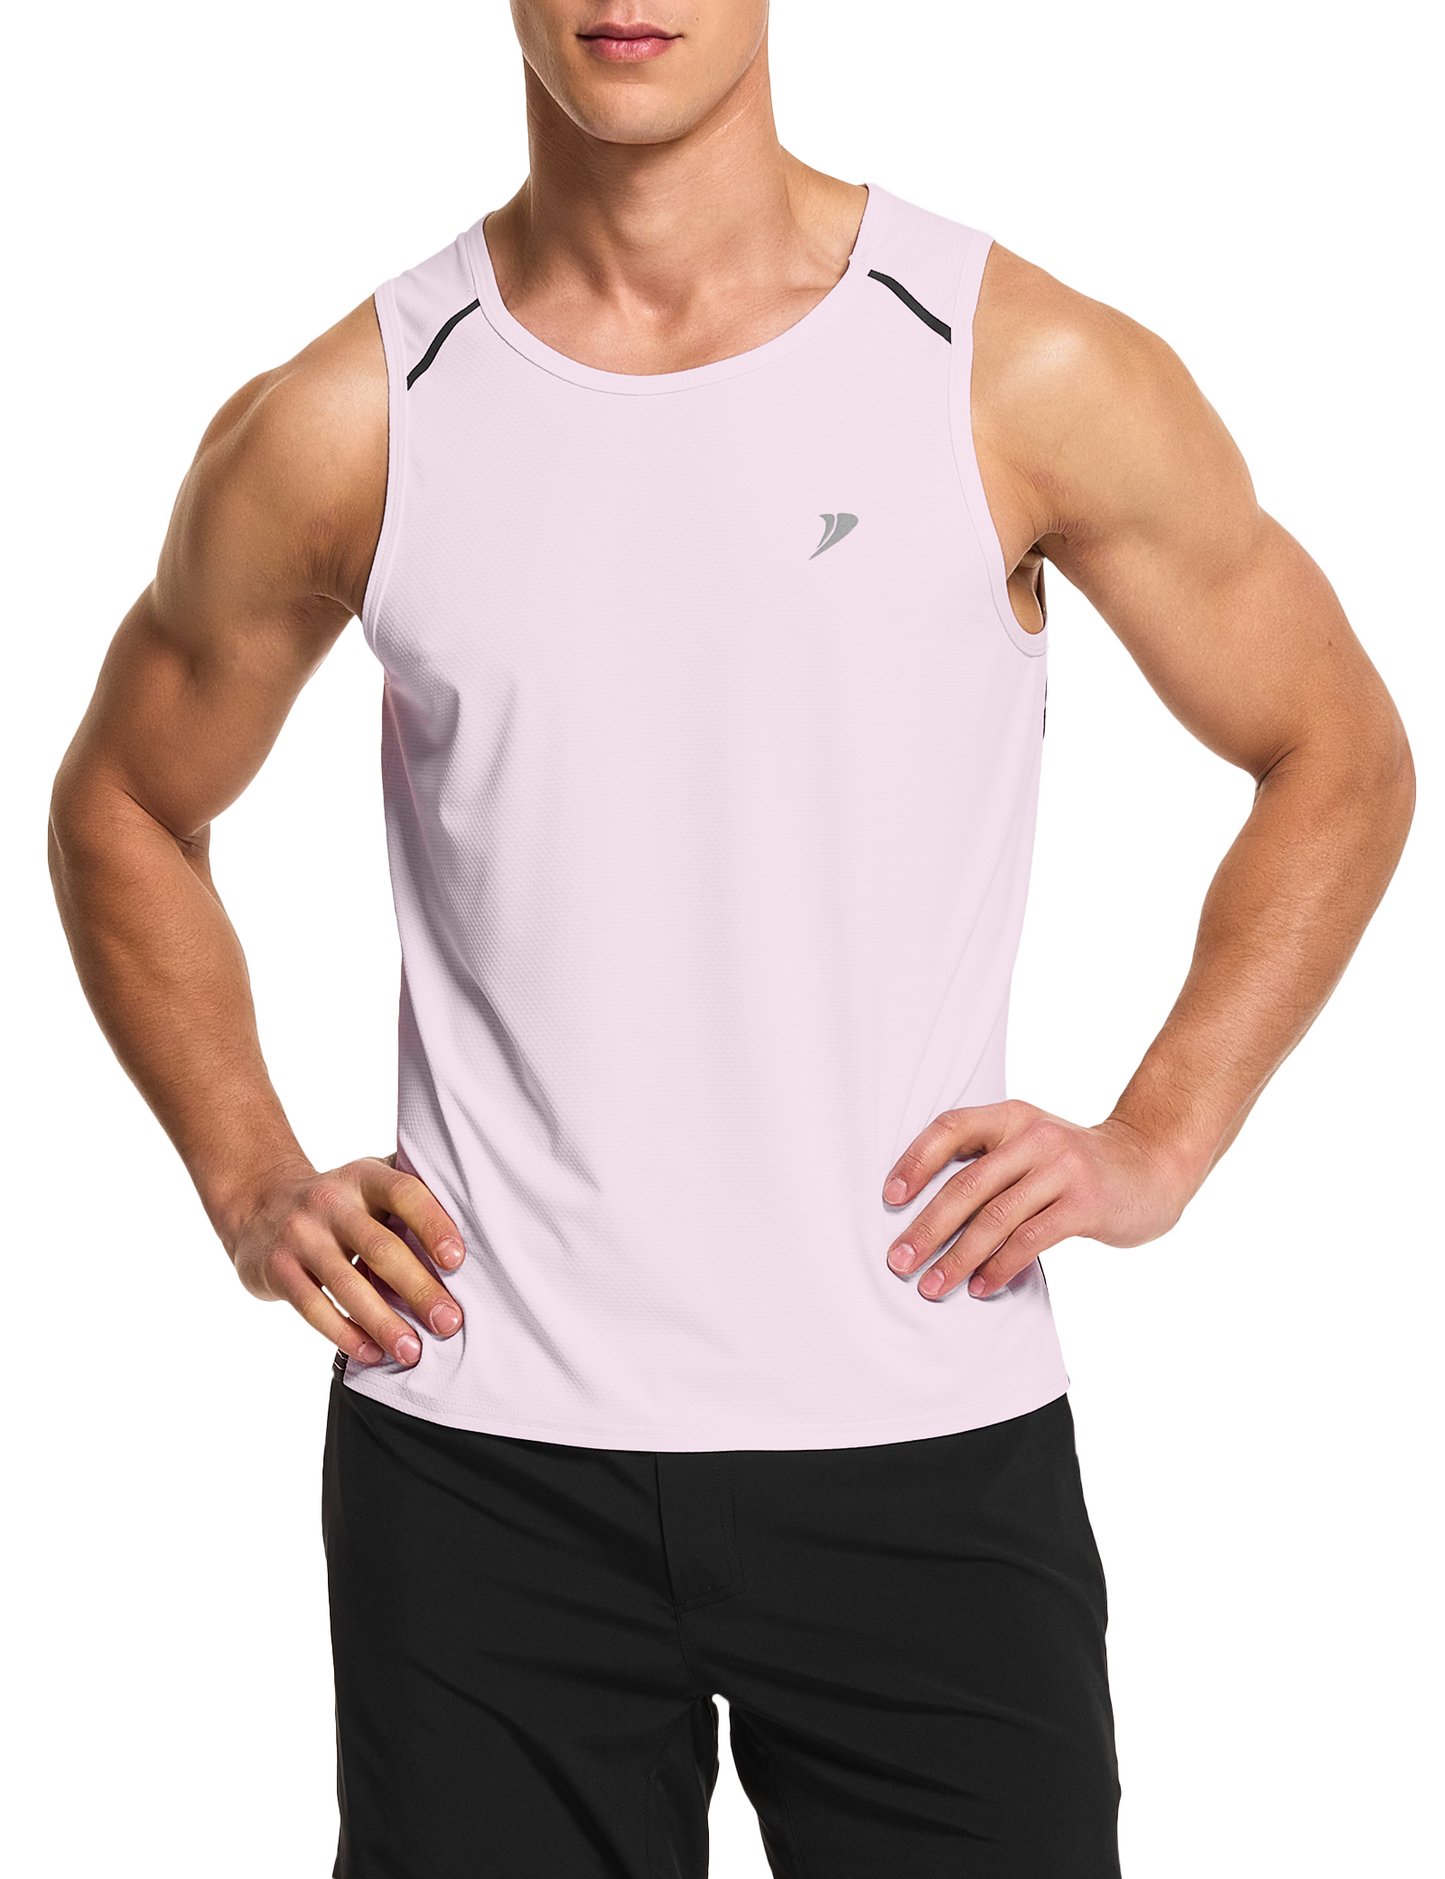 mens running workout gym swim tank top baby pink